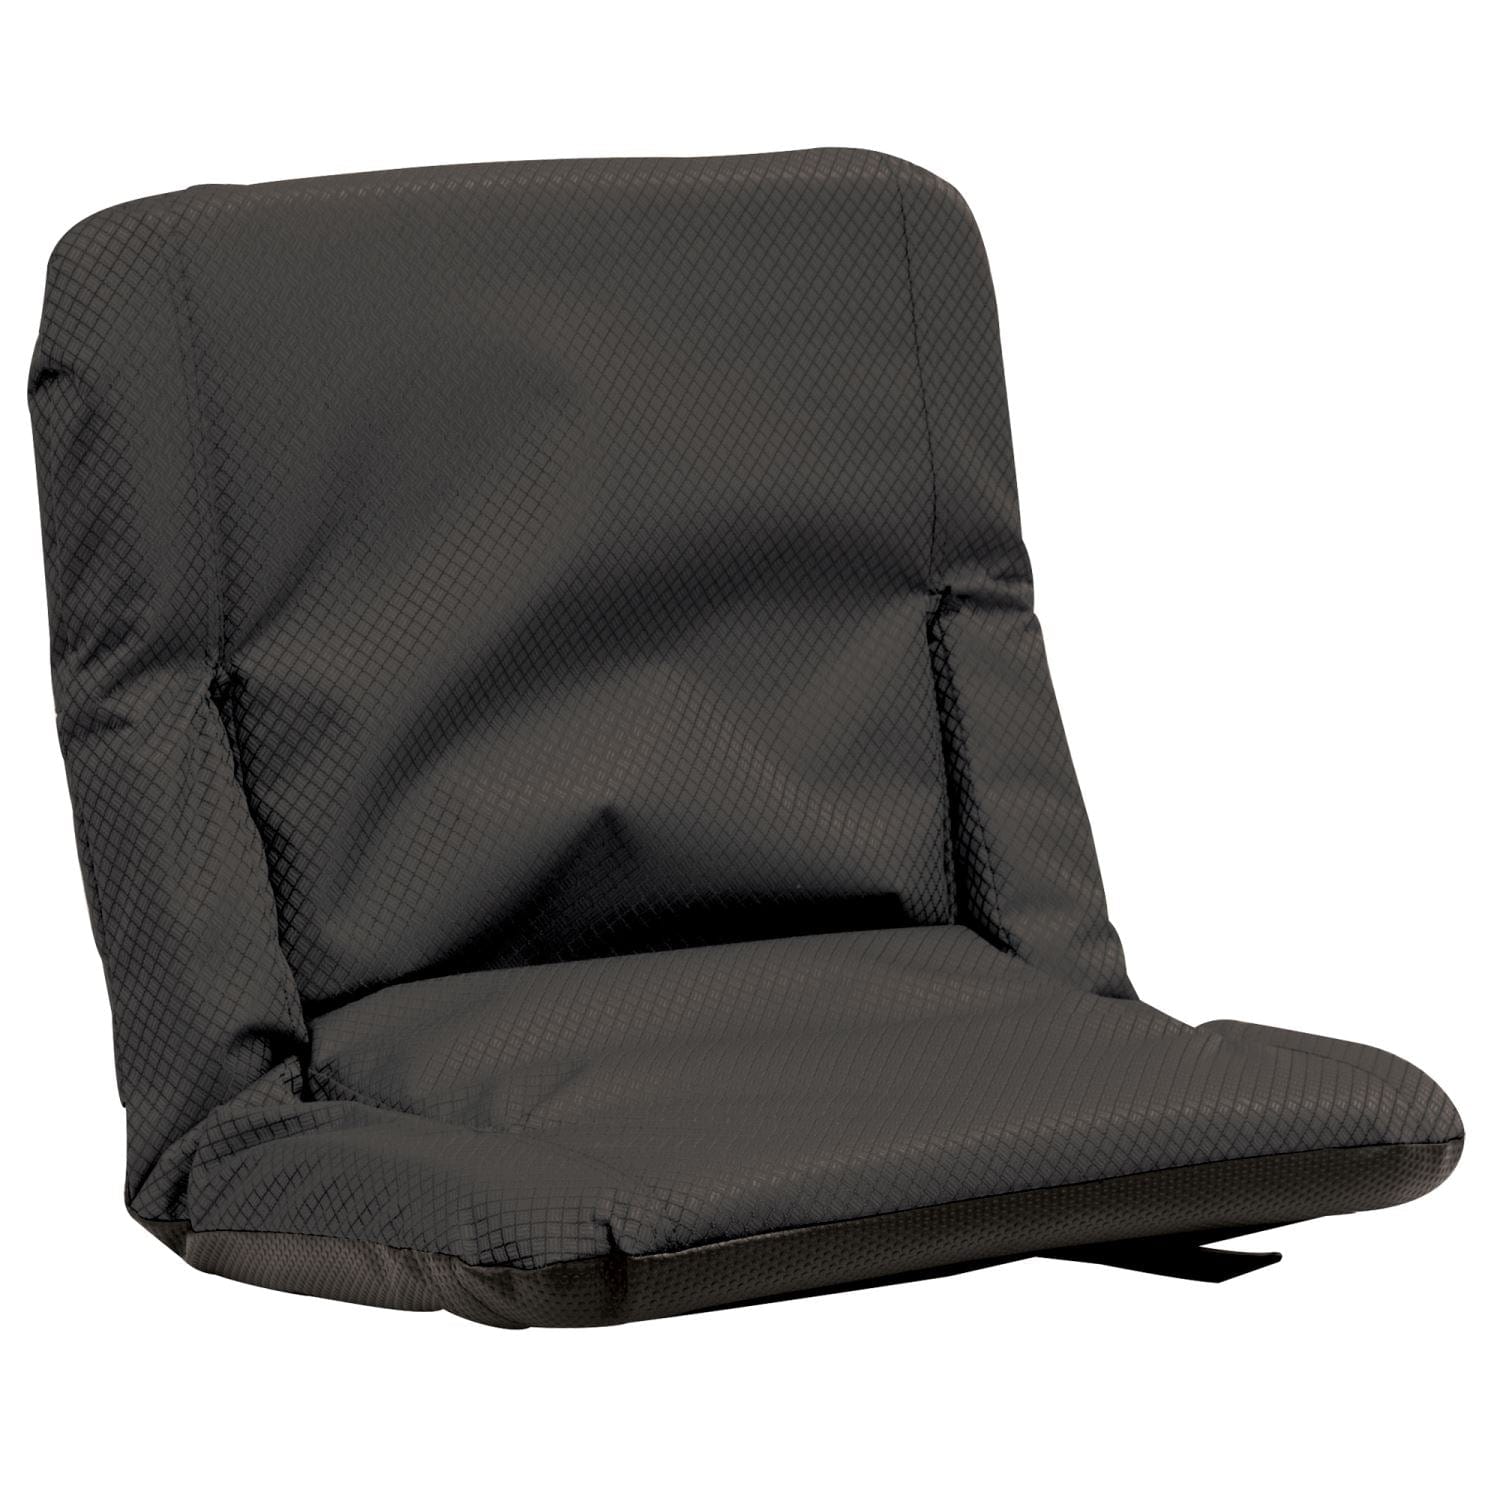 RIO Chair RIO | Go Anywhere Chair - Textured Black 10123-410-1